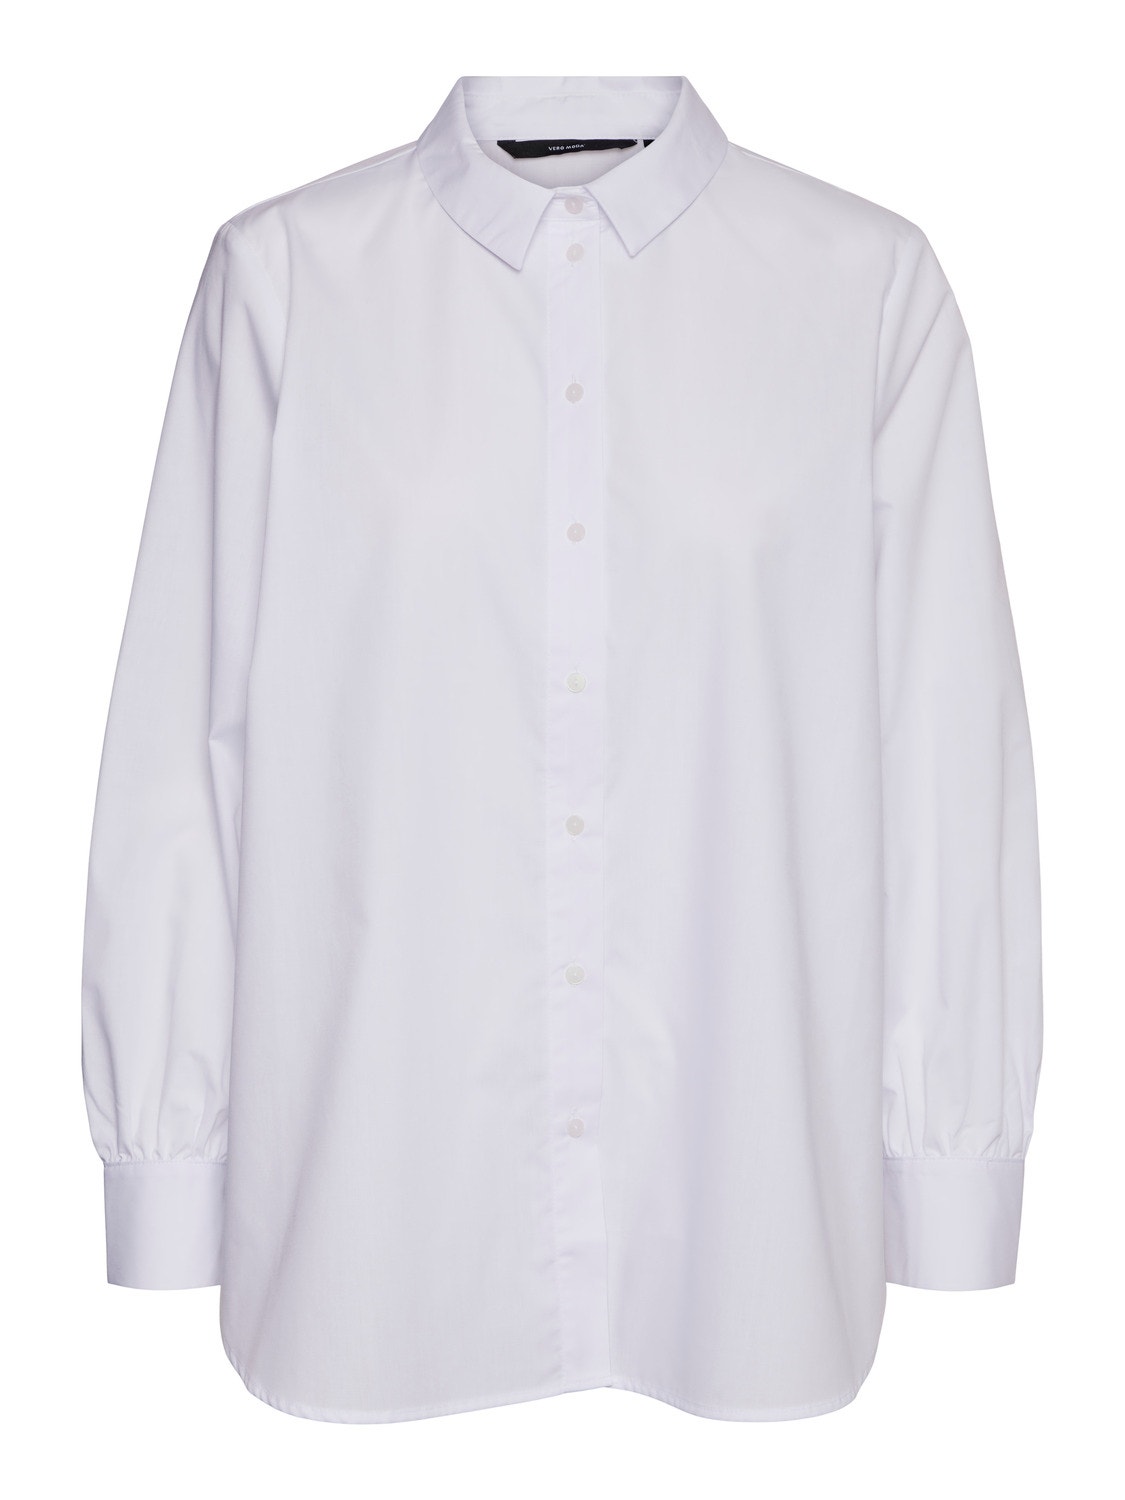 Vero Moda VMELLA Shirt -Bright White - 10264952